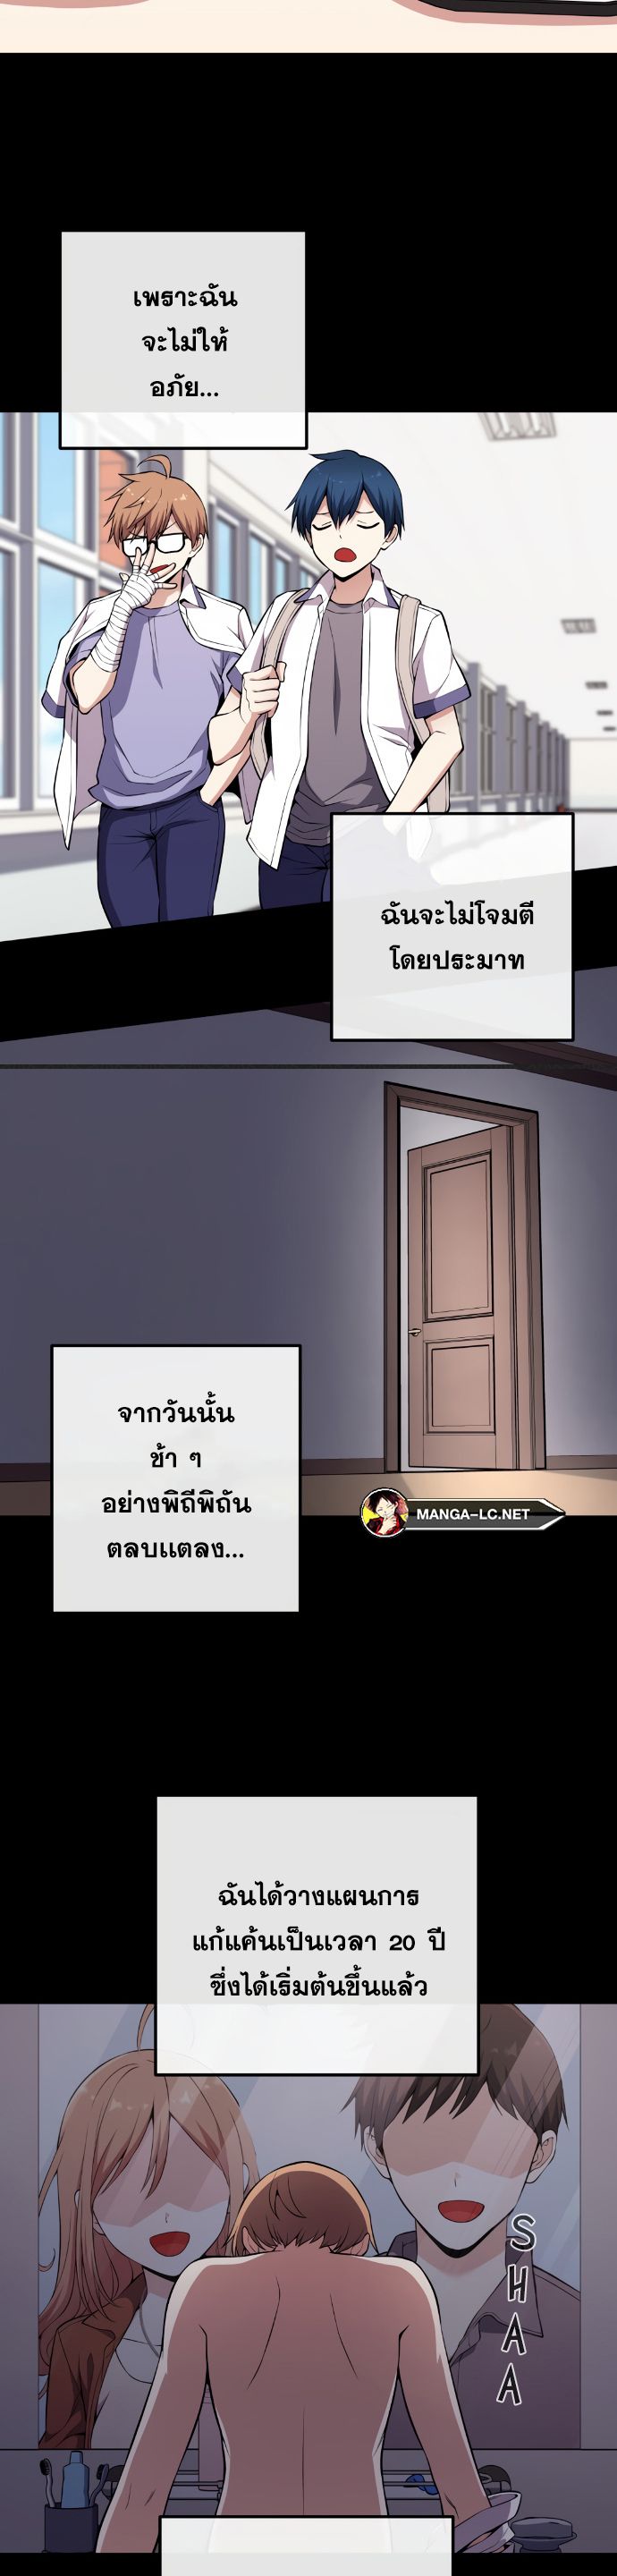 Webtoon Character Na Kang Lim ตอนที่ 139 (17)